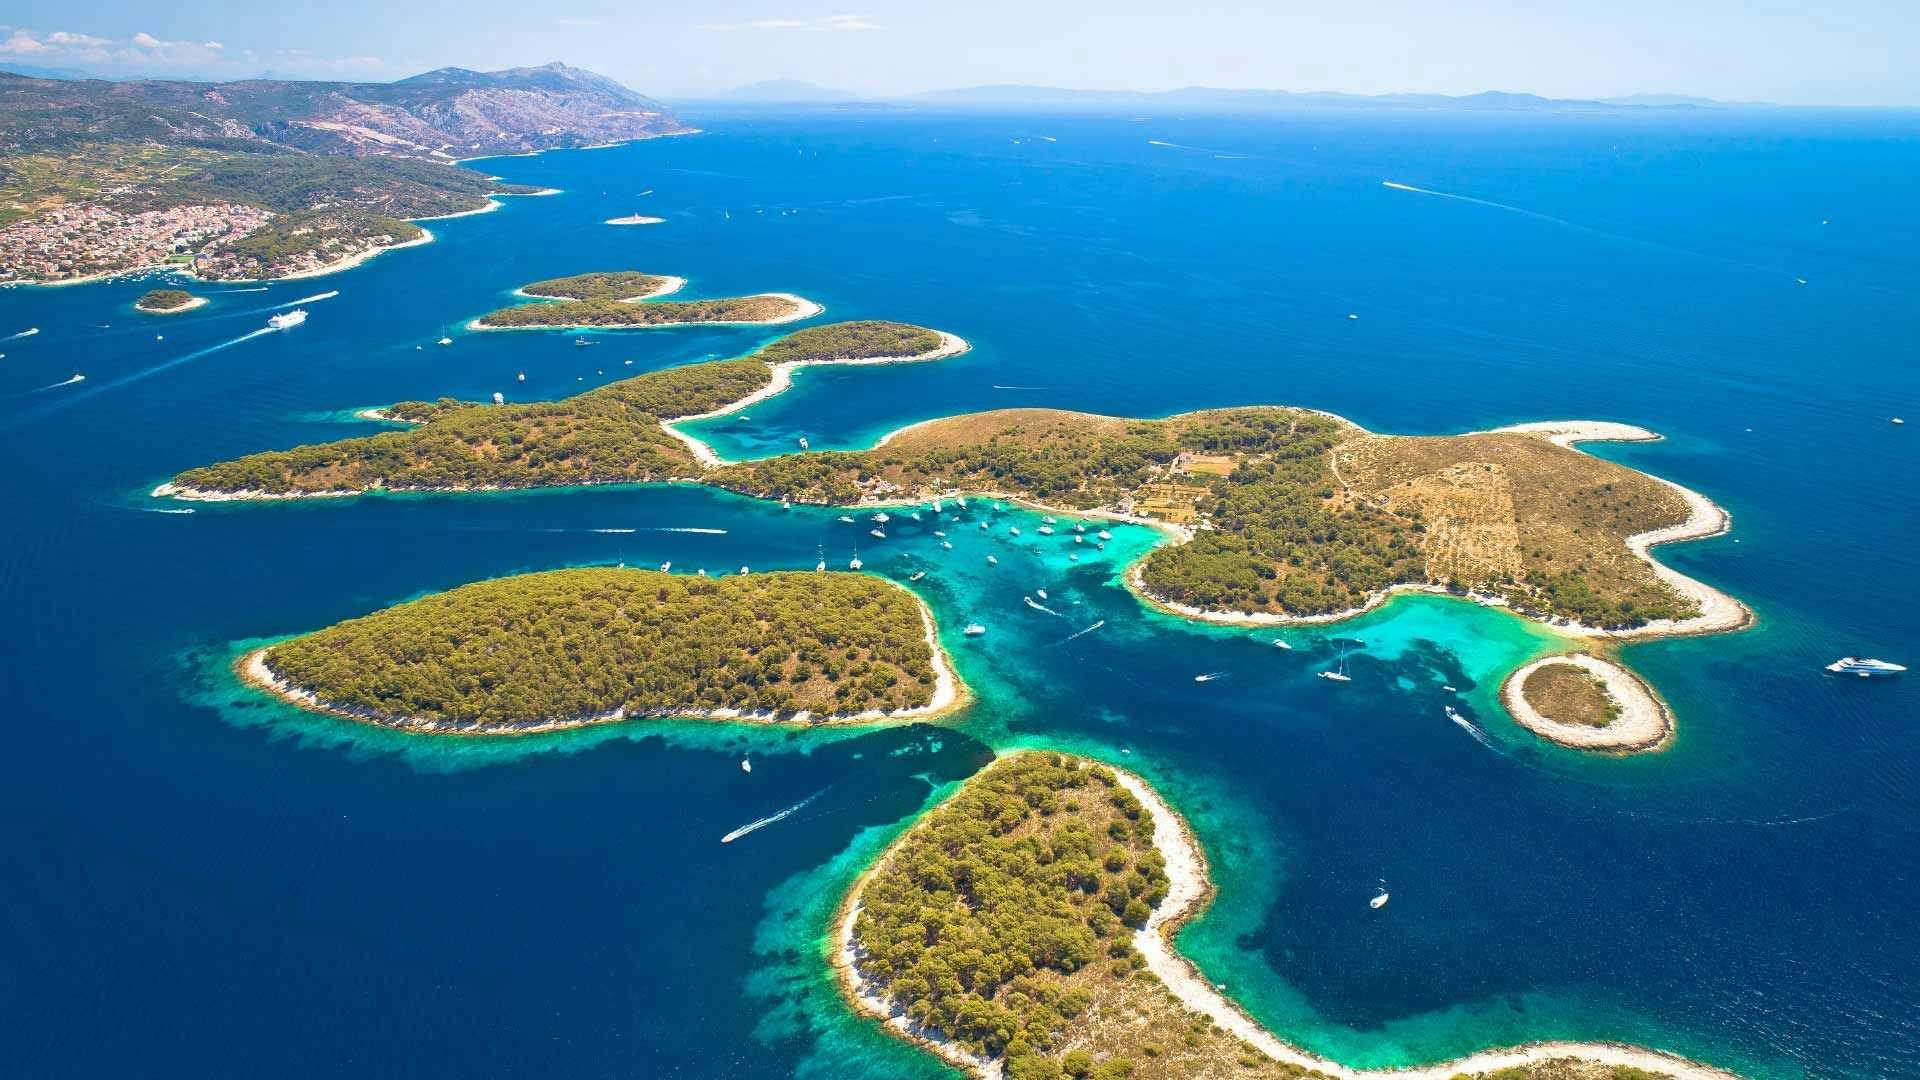 The Pakleni Islands in Croatia